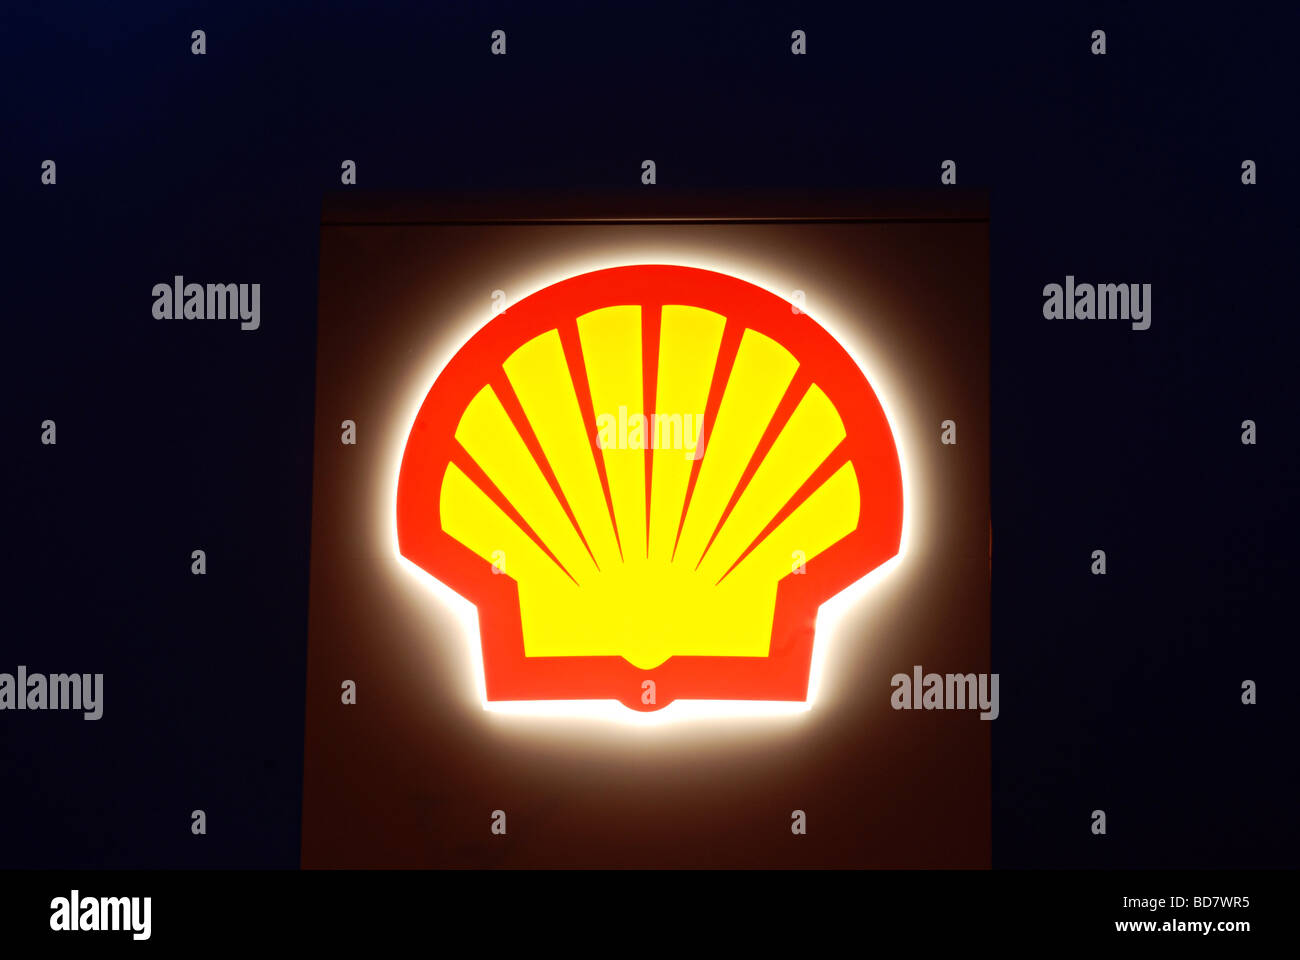 Shell Tankstelle Leuchtreklame Stockfoto